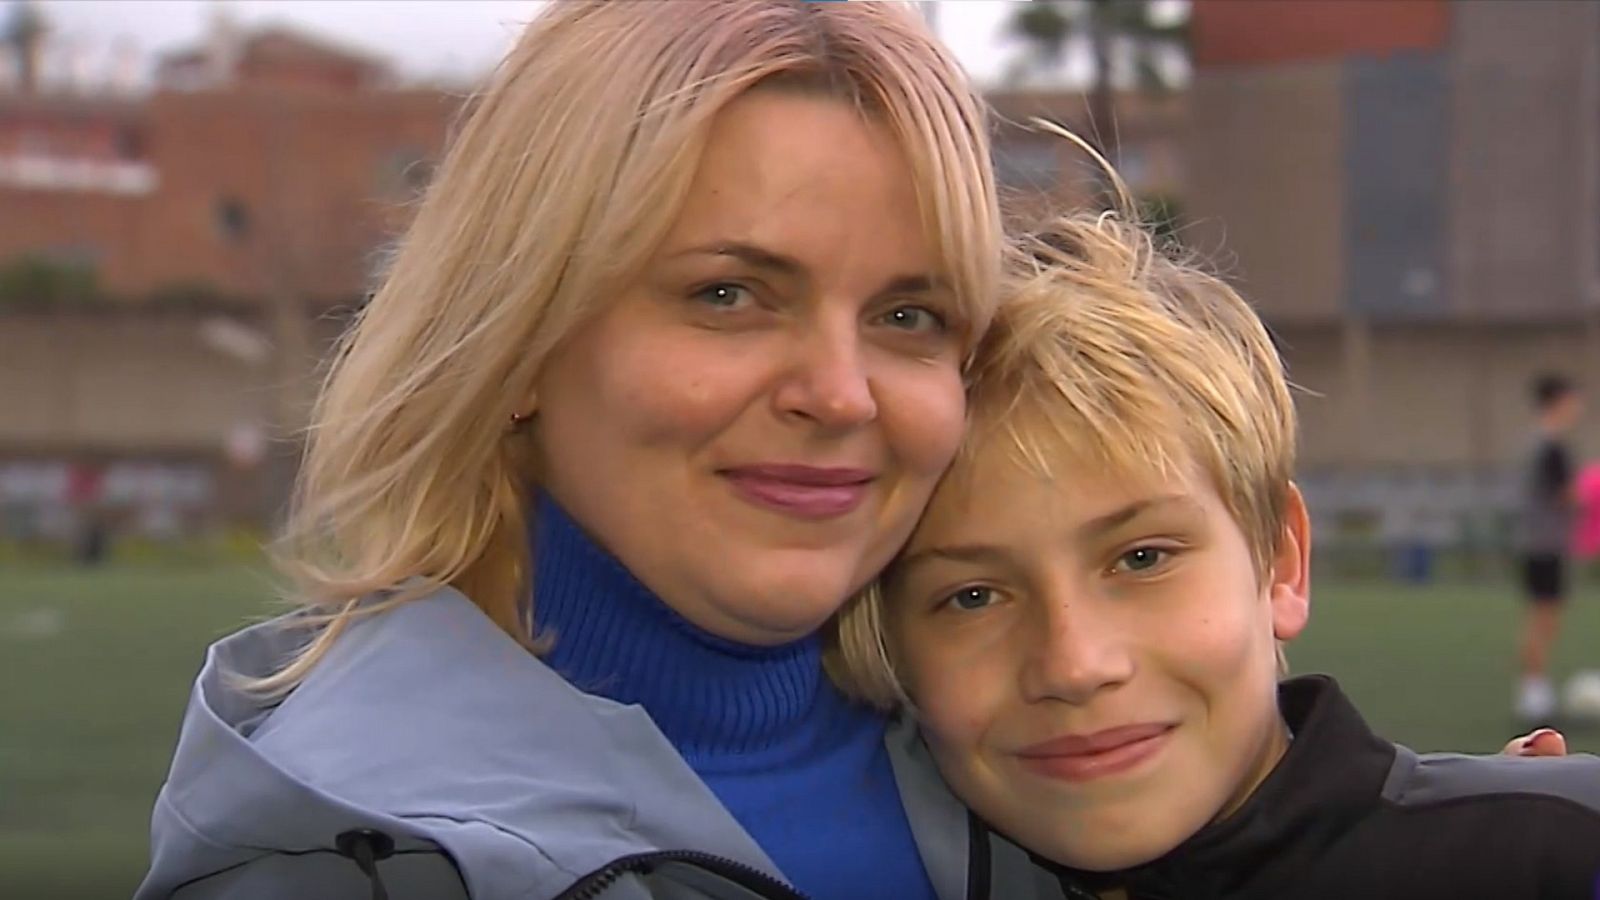 Guerra en Ucrania | El reencuentro de una madre y su hijo tras seis meses separados